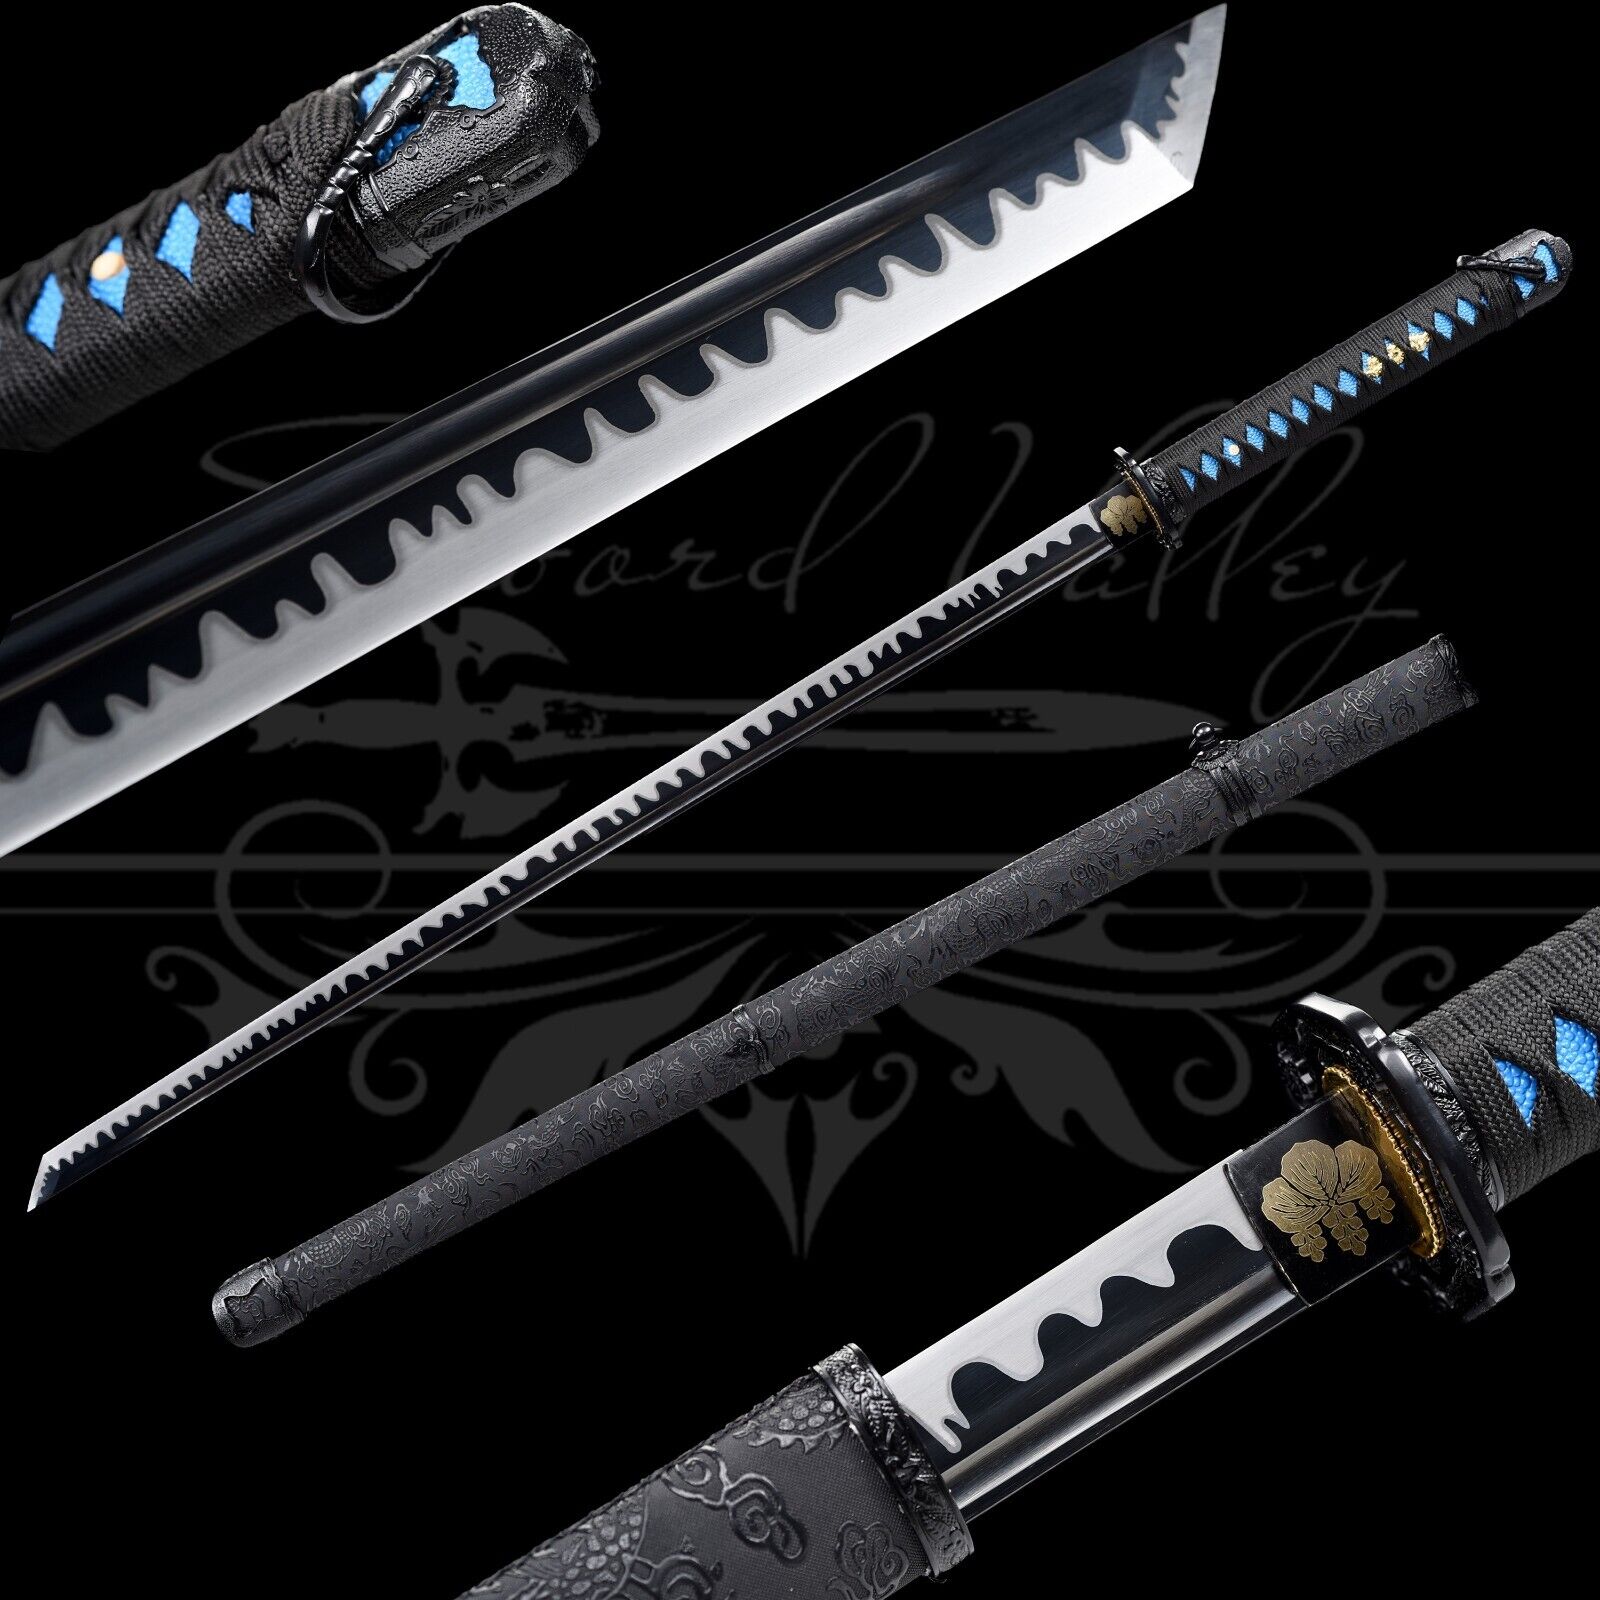 Handmade Katana/Manganese Steel/Full Tang/Collectible Weapons/Real Sword/Sharp